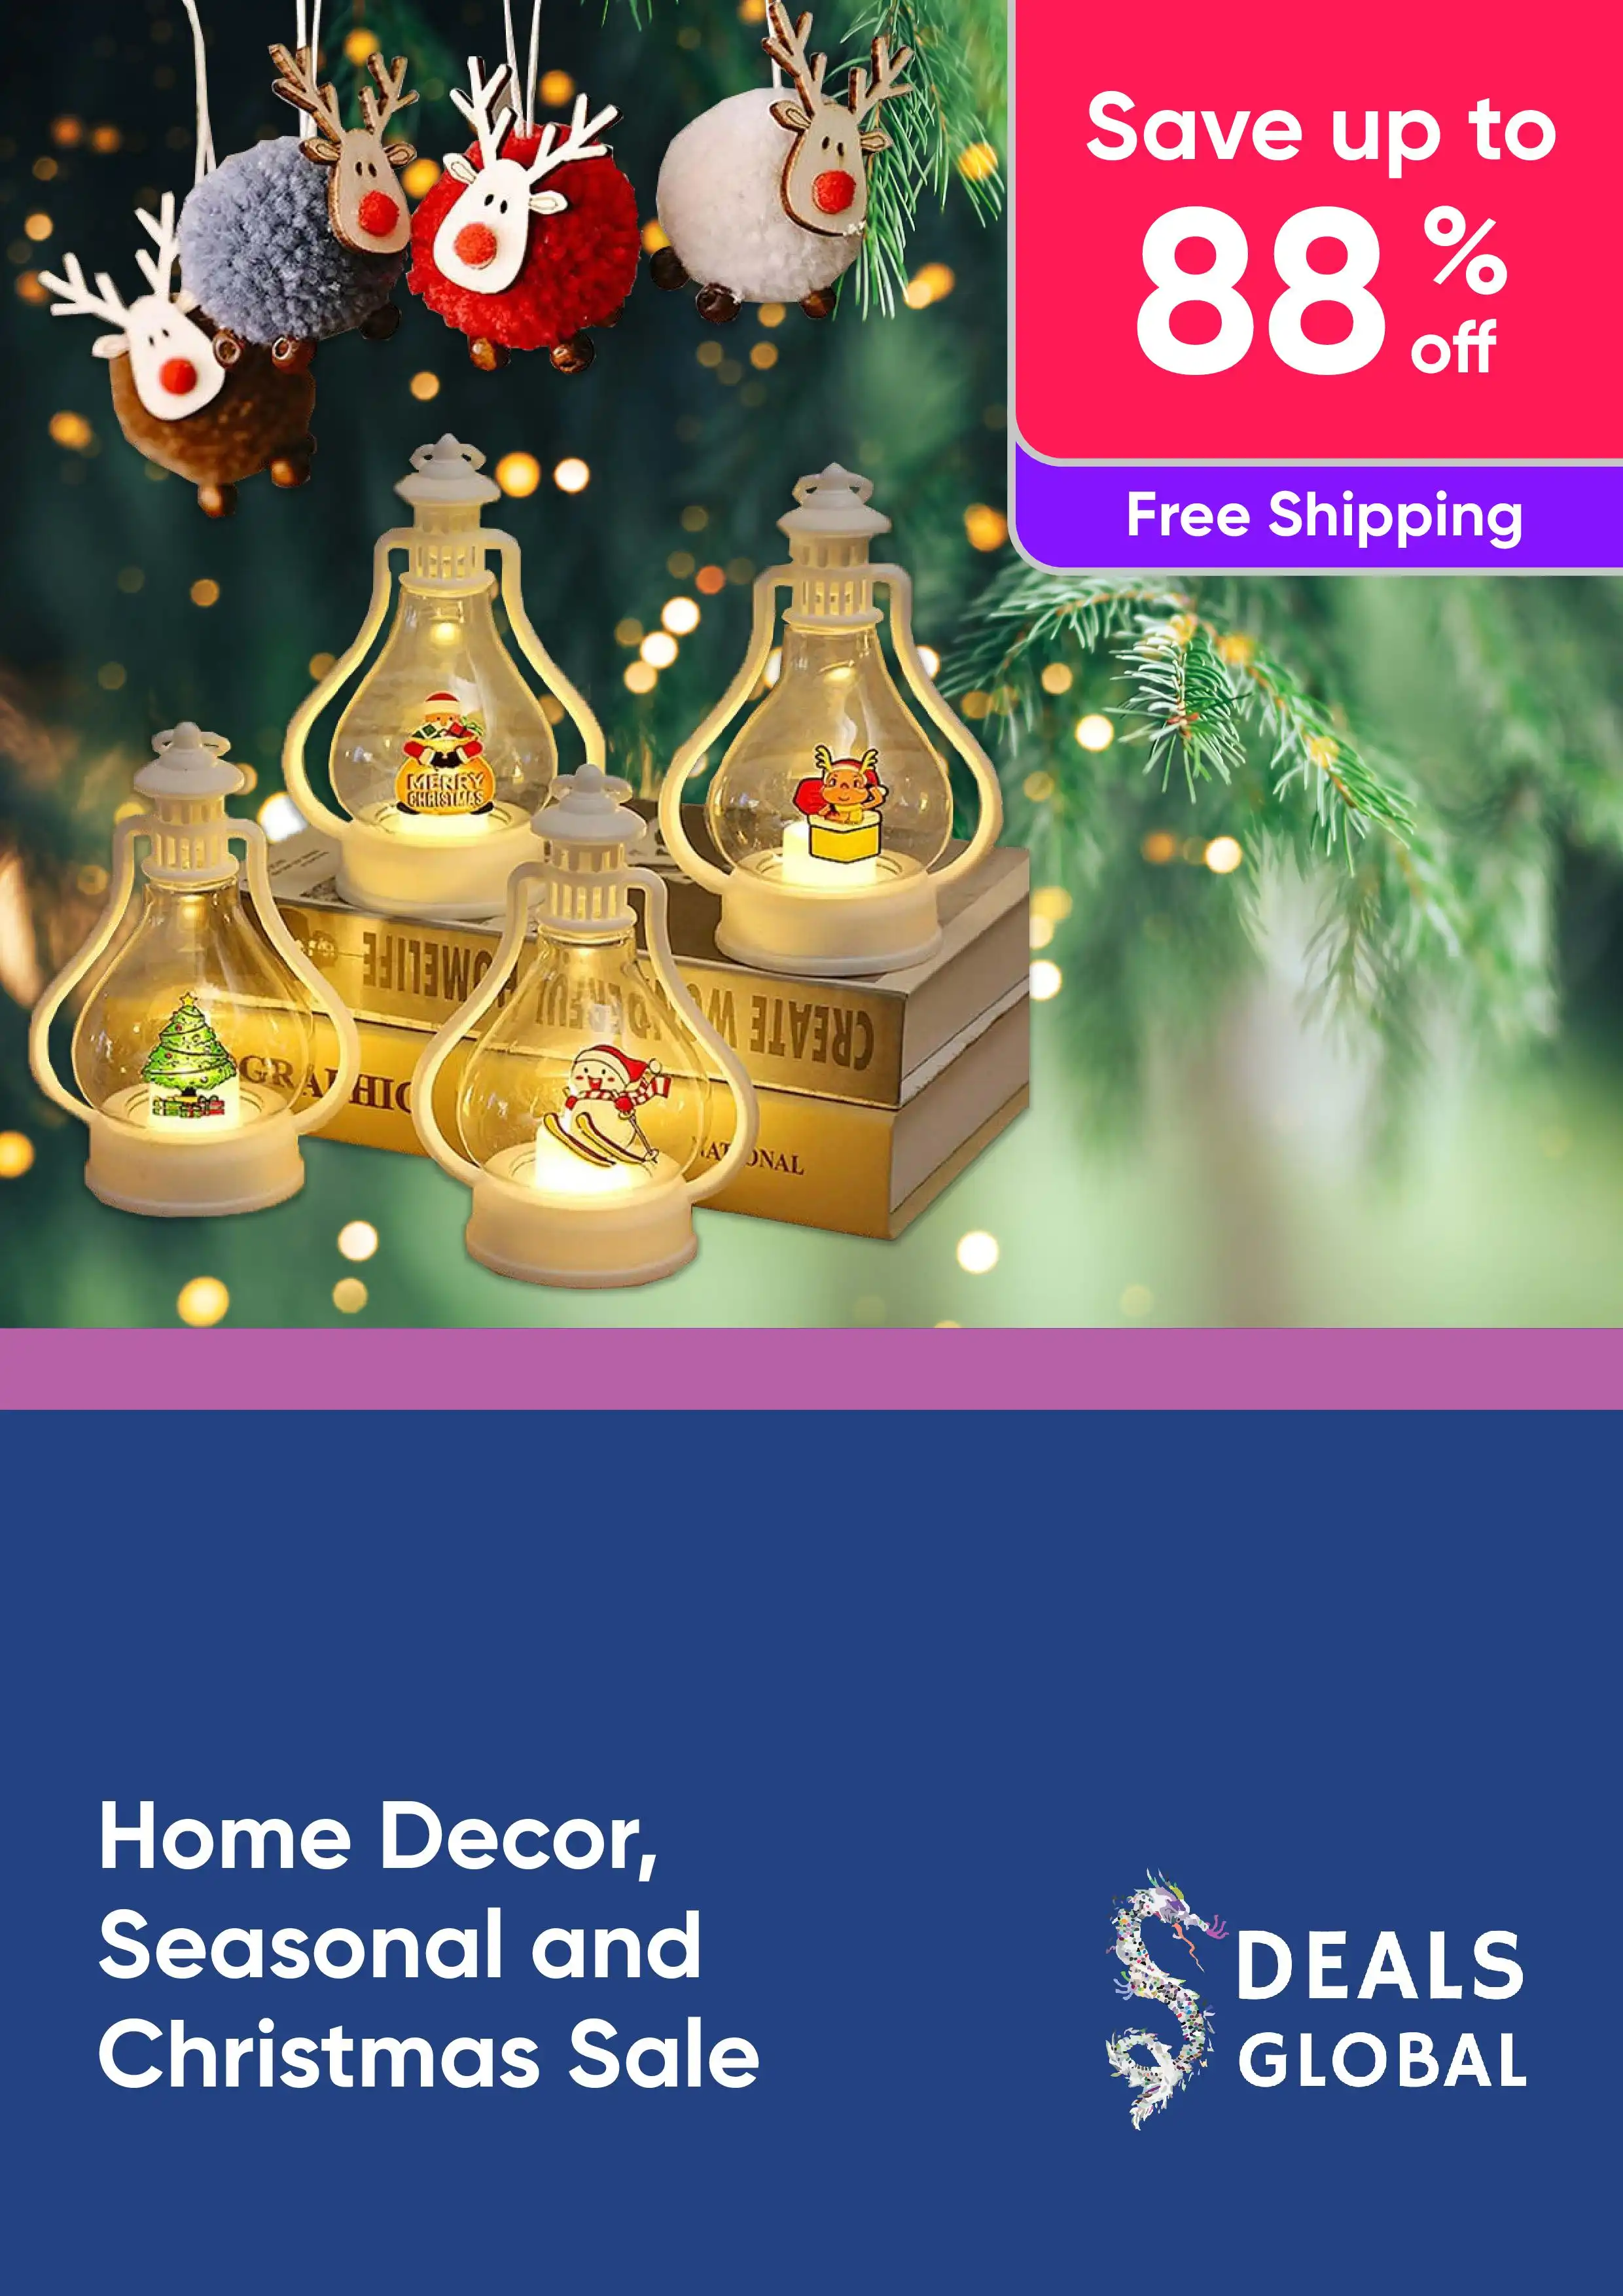 Home Decor, Seasonal and Christmas Sale - Save Up to 88% Off